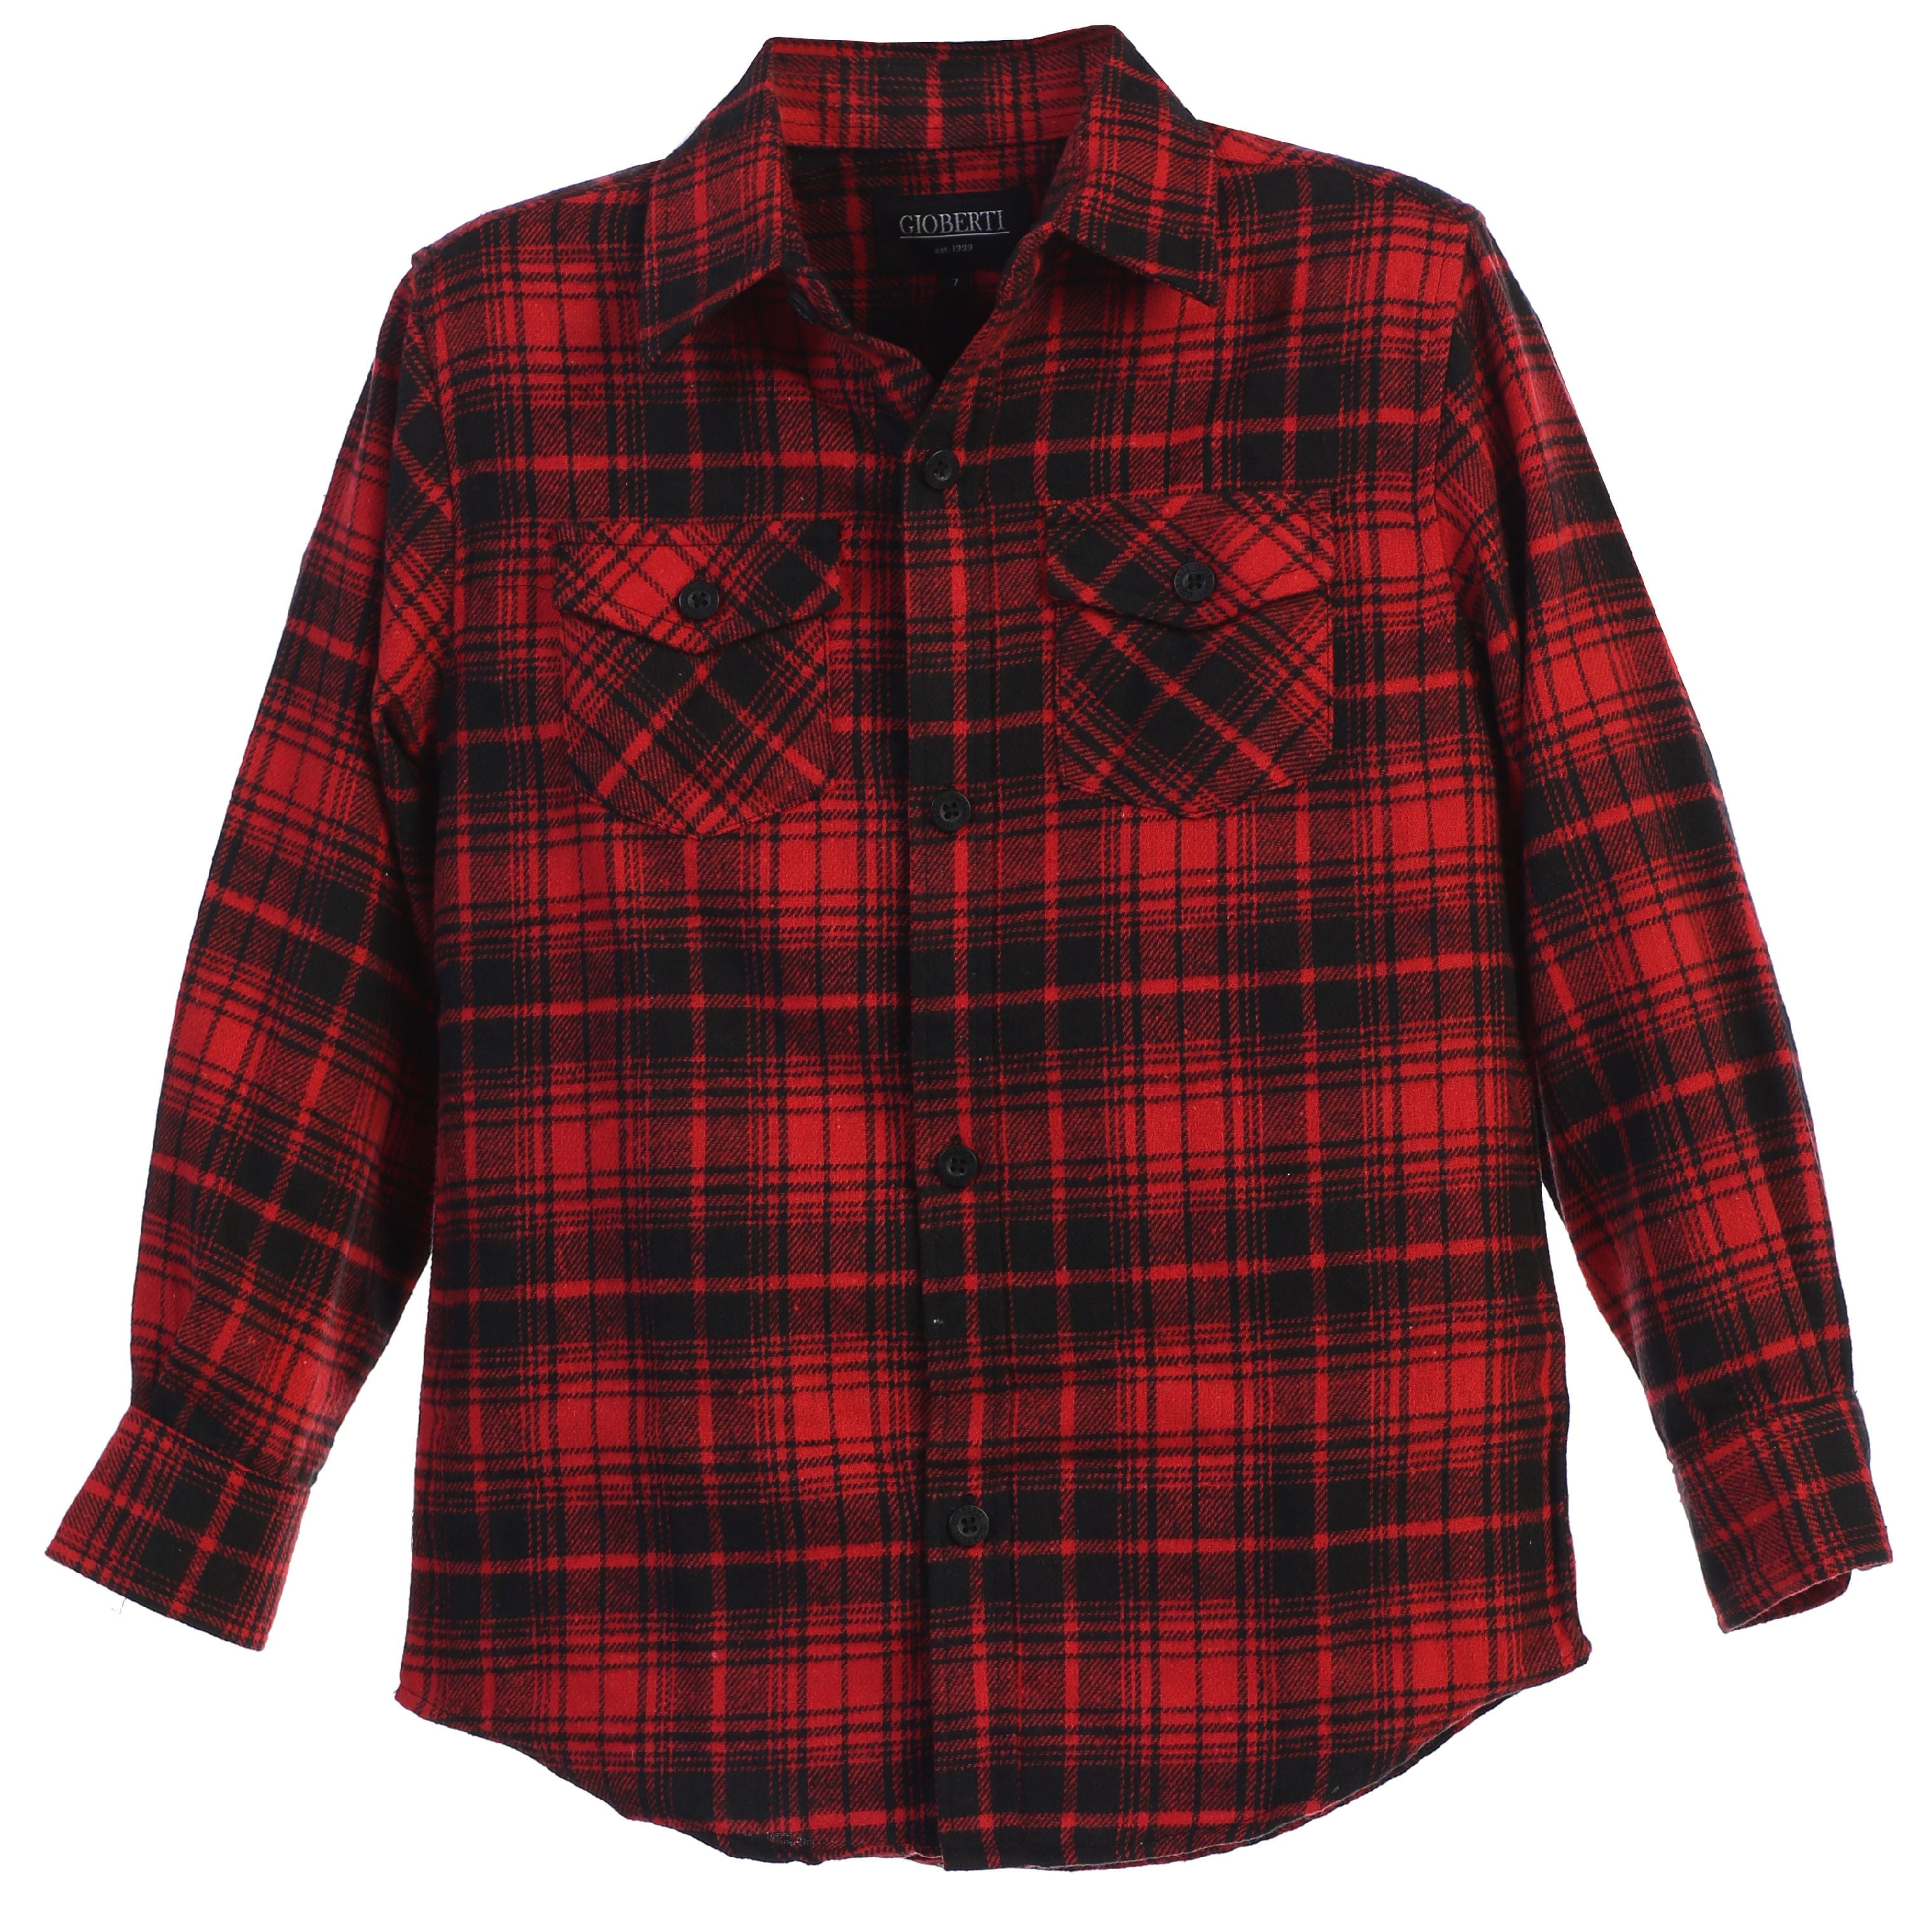 Gioberti Boys Long Sleeve Plaid Checked Flannel Shirt - Walmart.com